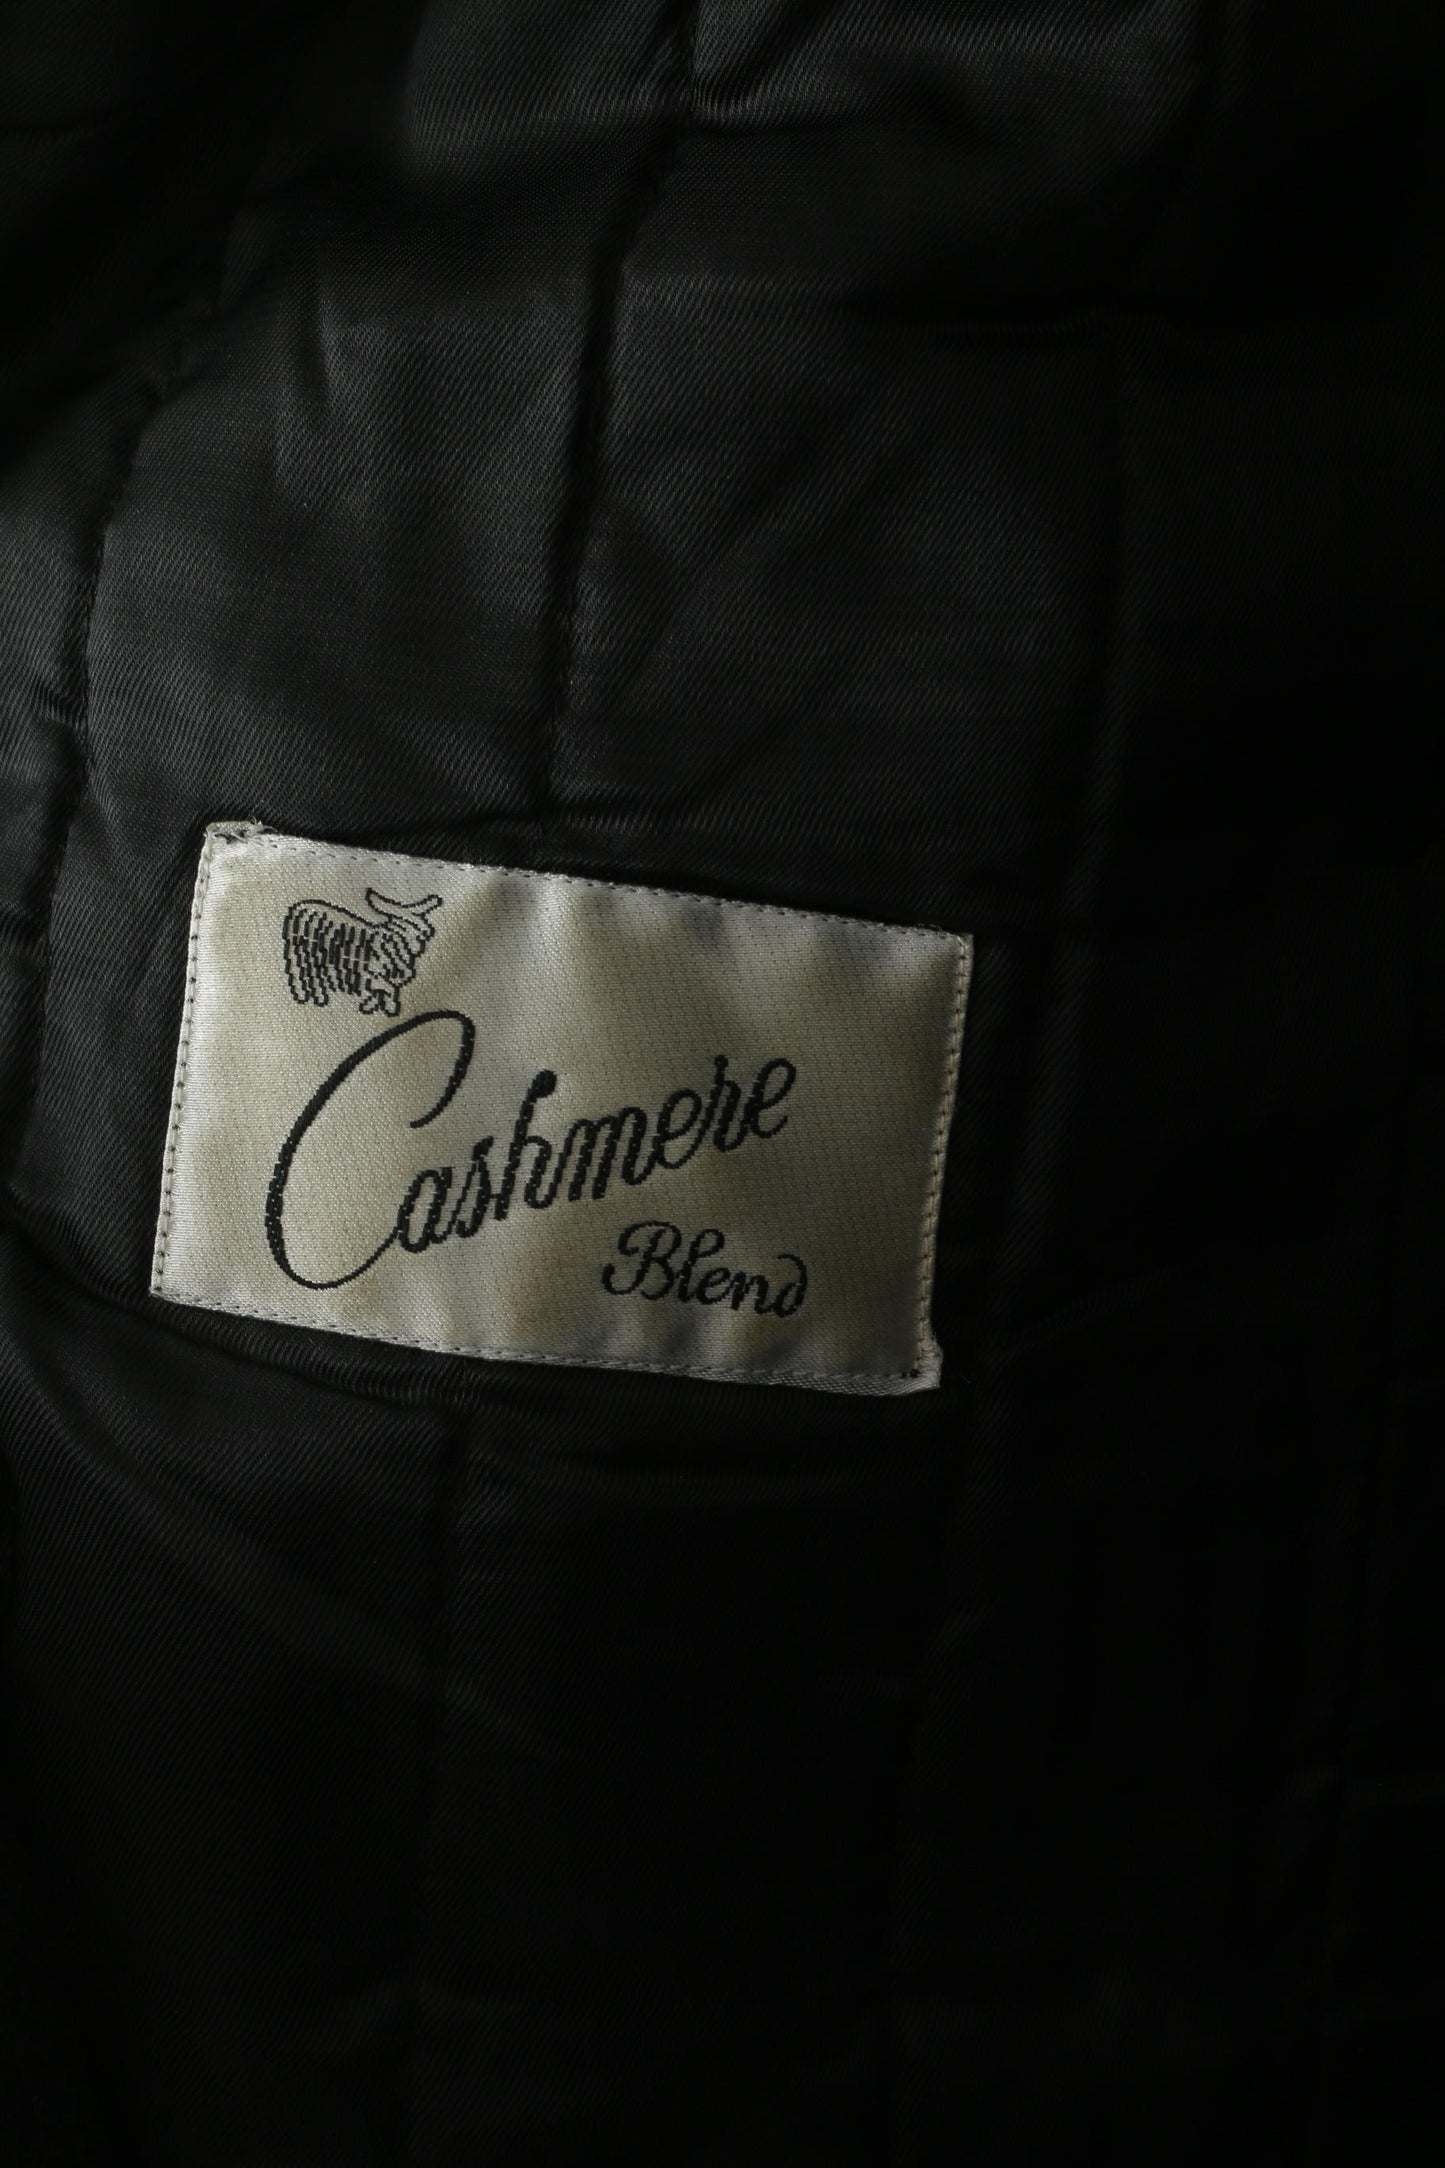 Di Caprio Hommes 48 XL Manteau Noir Laine Cachemire Mélange Simple Boutonnage Haut Vintage